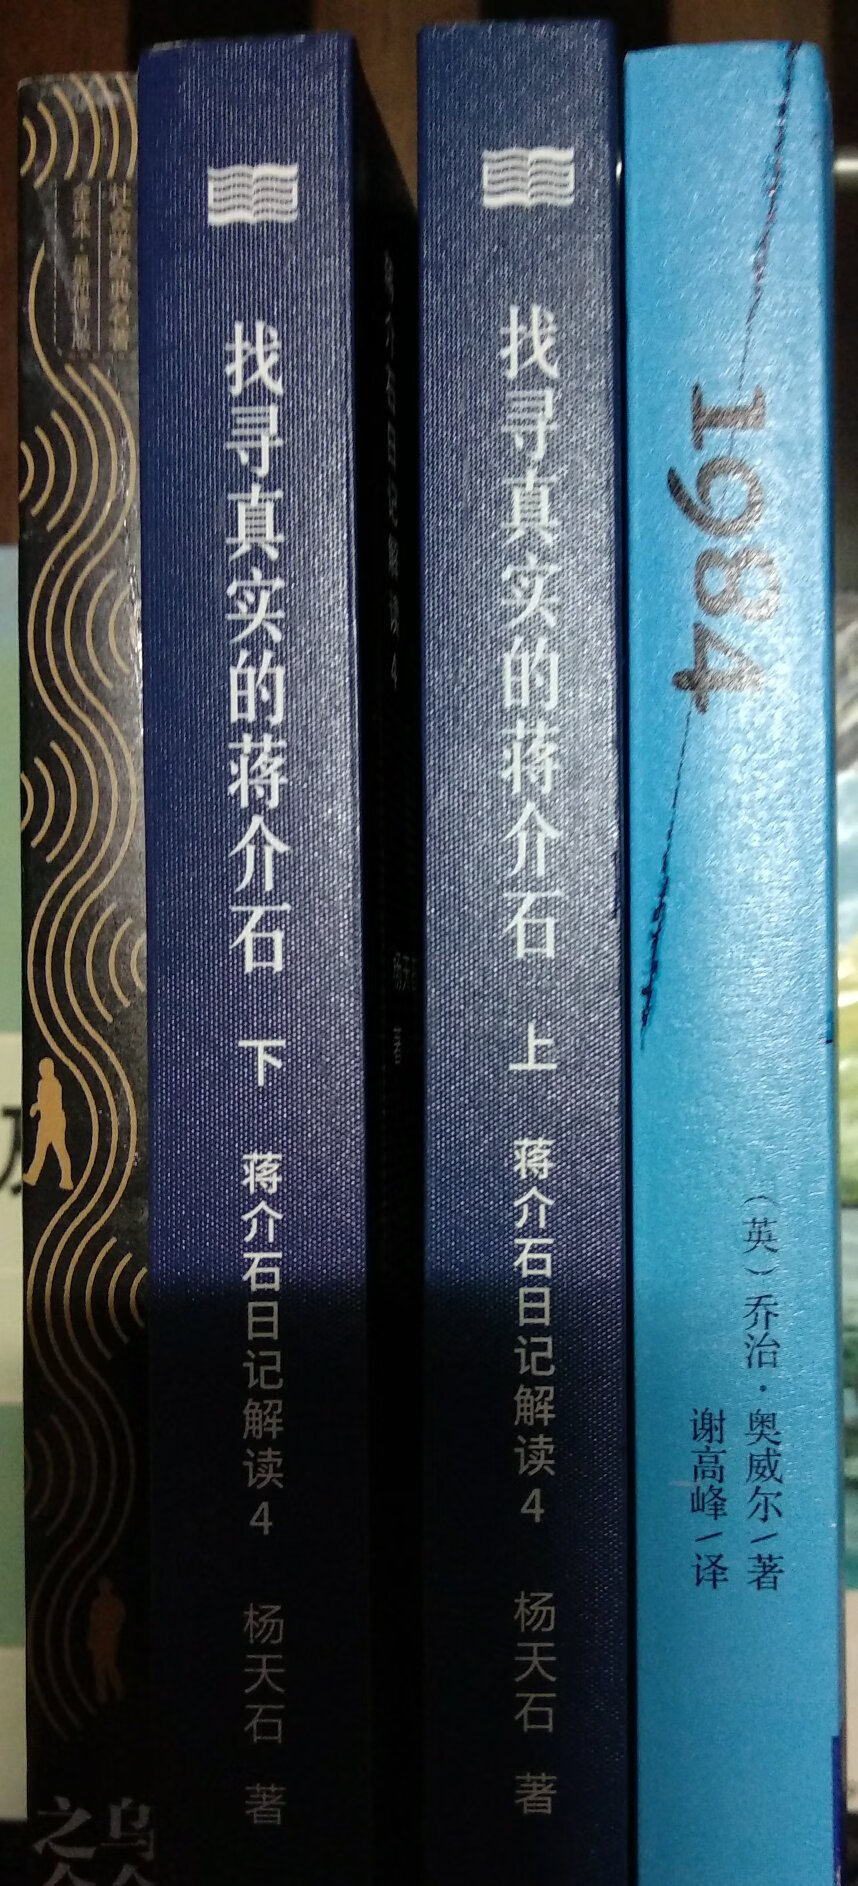 好书，这是我第二次在买书，明天还要买。杨天石先生是值得尊重的学者。